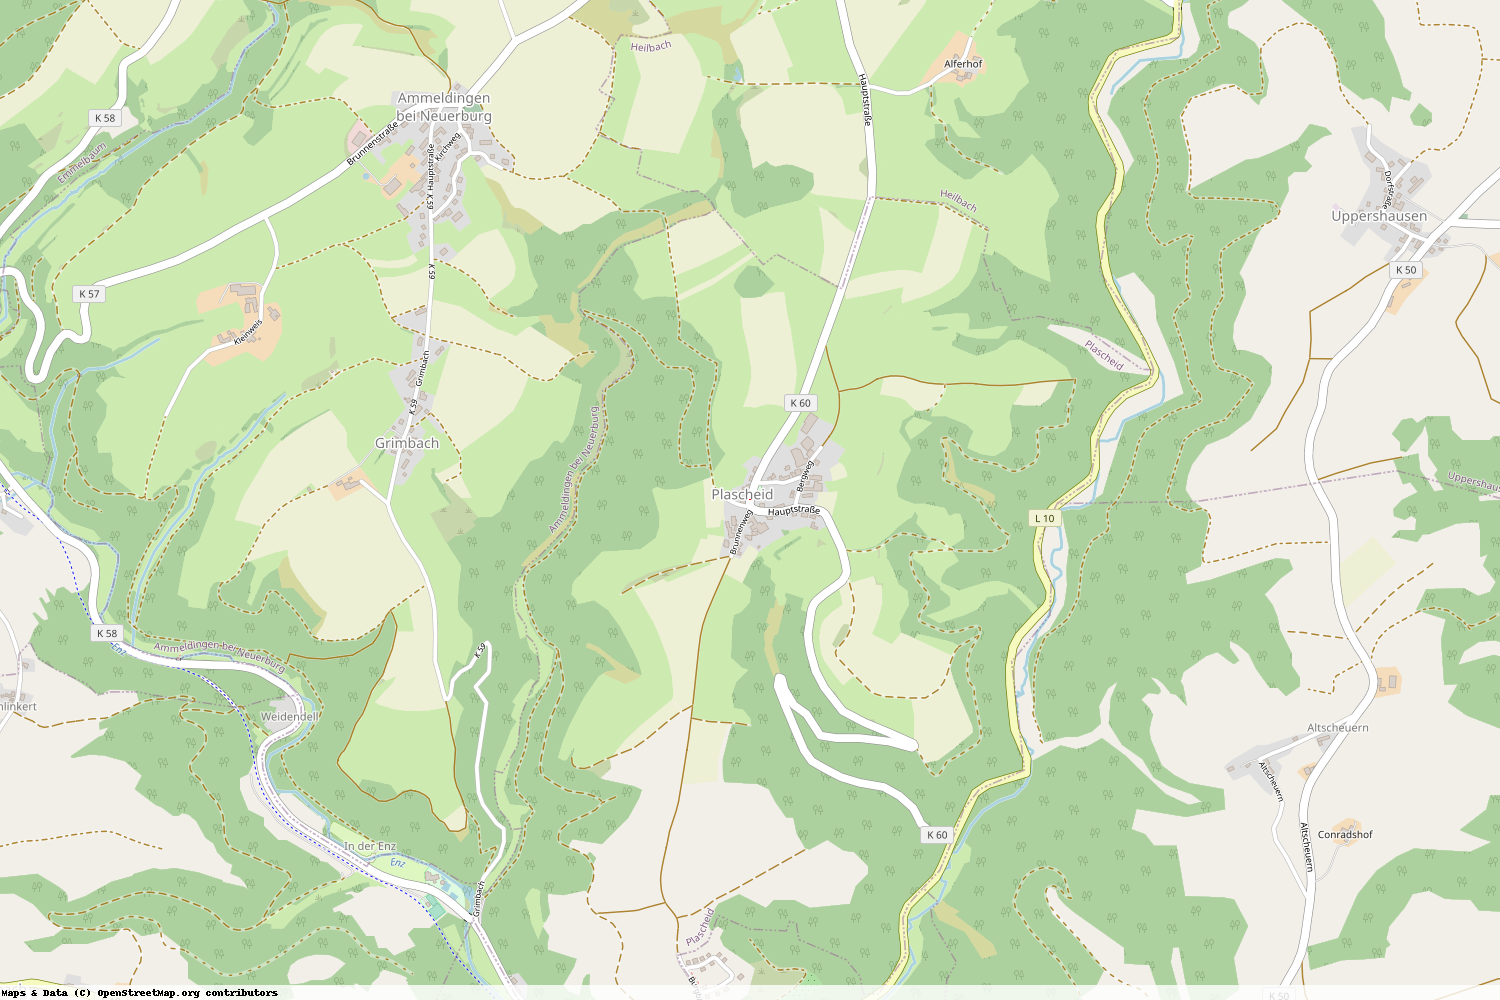 Ist gerade Stromausfall in Rheinland-Pfalz - Eifelkreis Bitburg-Prüm - Plascheid?